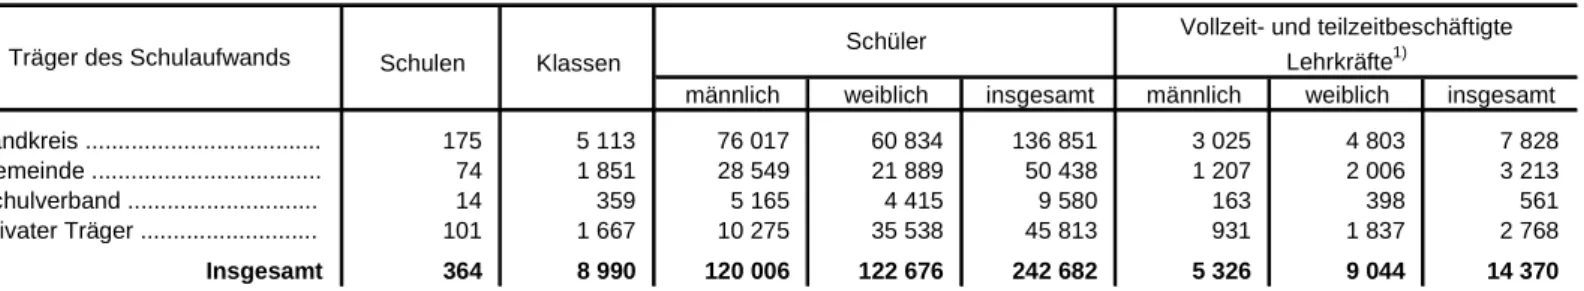 Tabelle 11. Realschulen in Bayern 2011/12 nach den Trägern des Schulaufwands